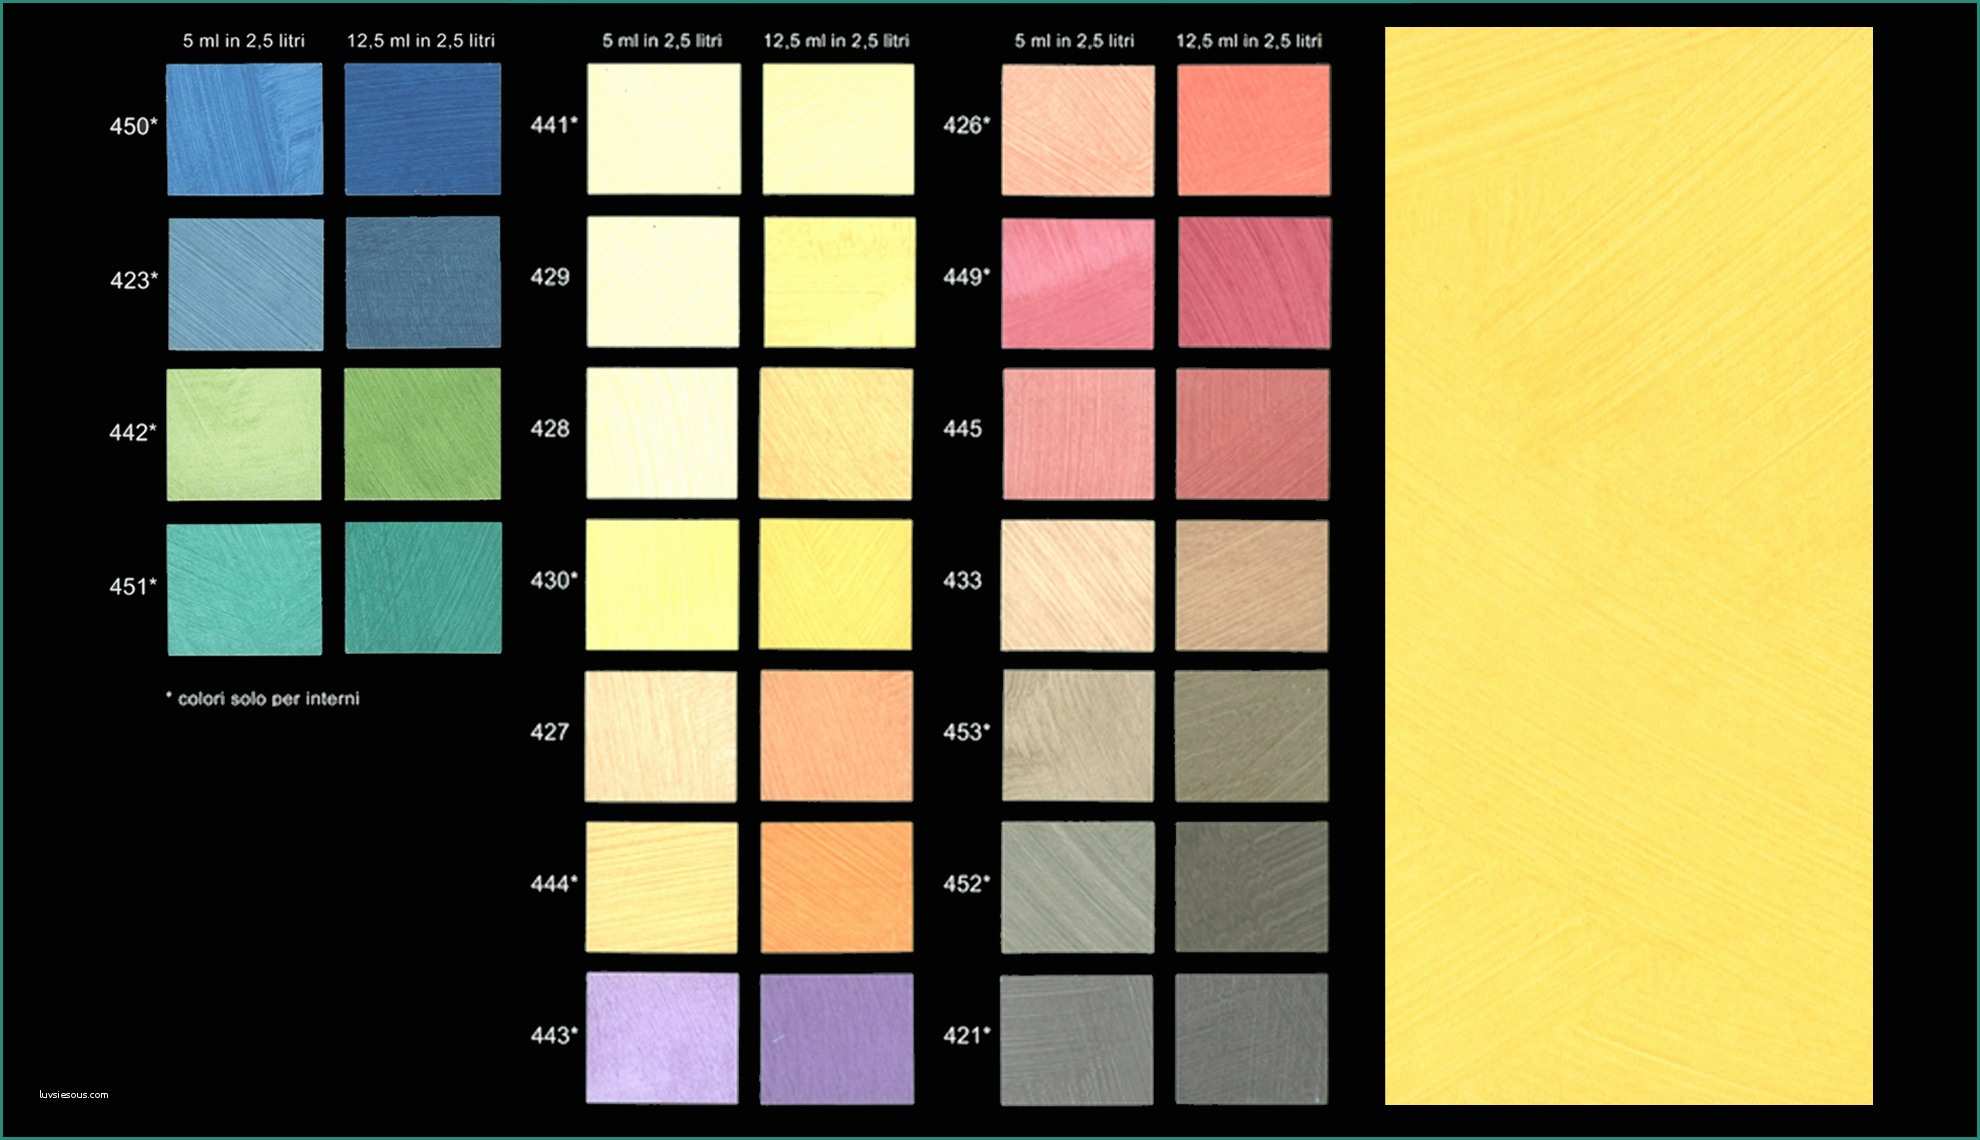 Pareti Divisorie Fai Da Te E Gallery Of Mobili E Arredamento Pitture Per Interni Colori Colori